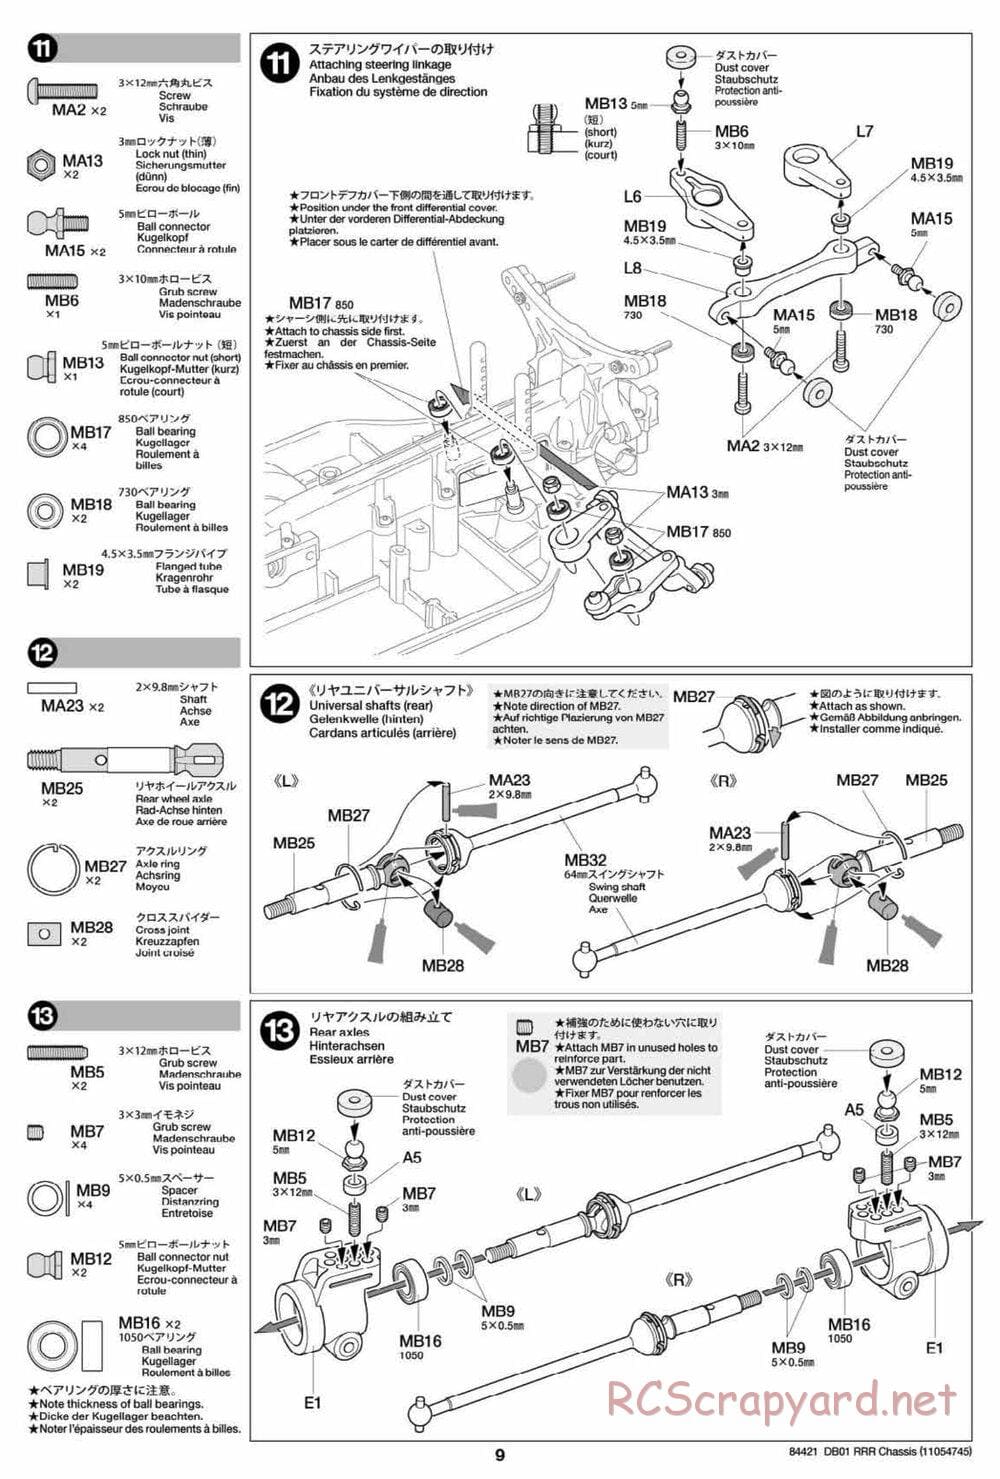 Tamiya - DB-01 RRR Chassis - Manual - Page 9